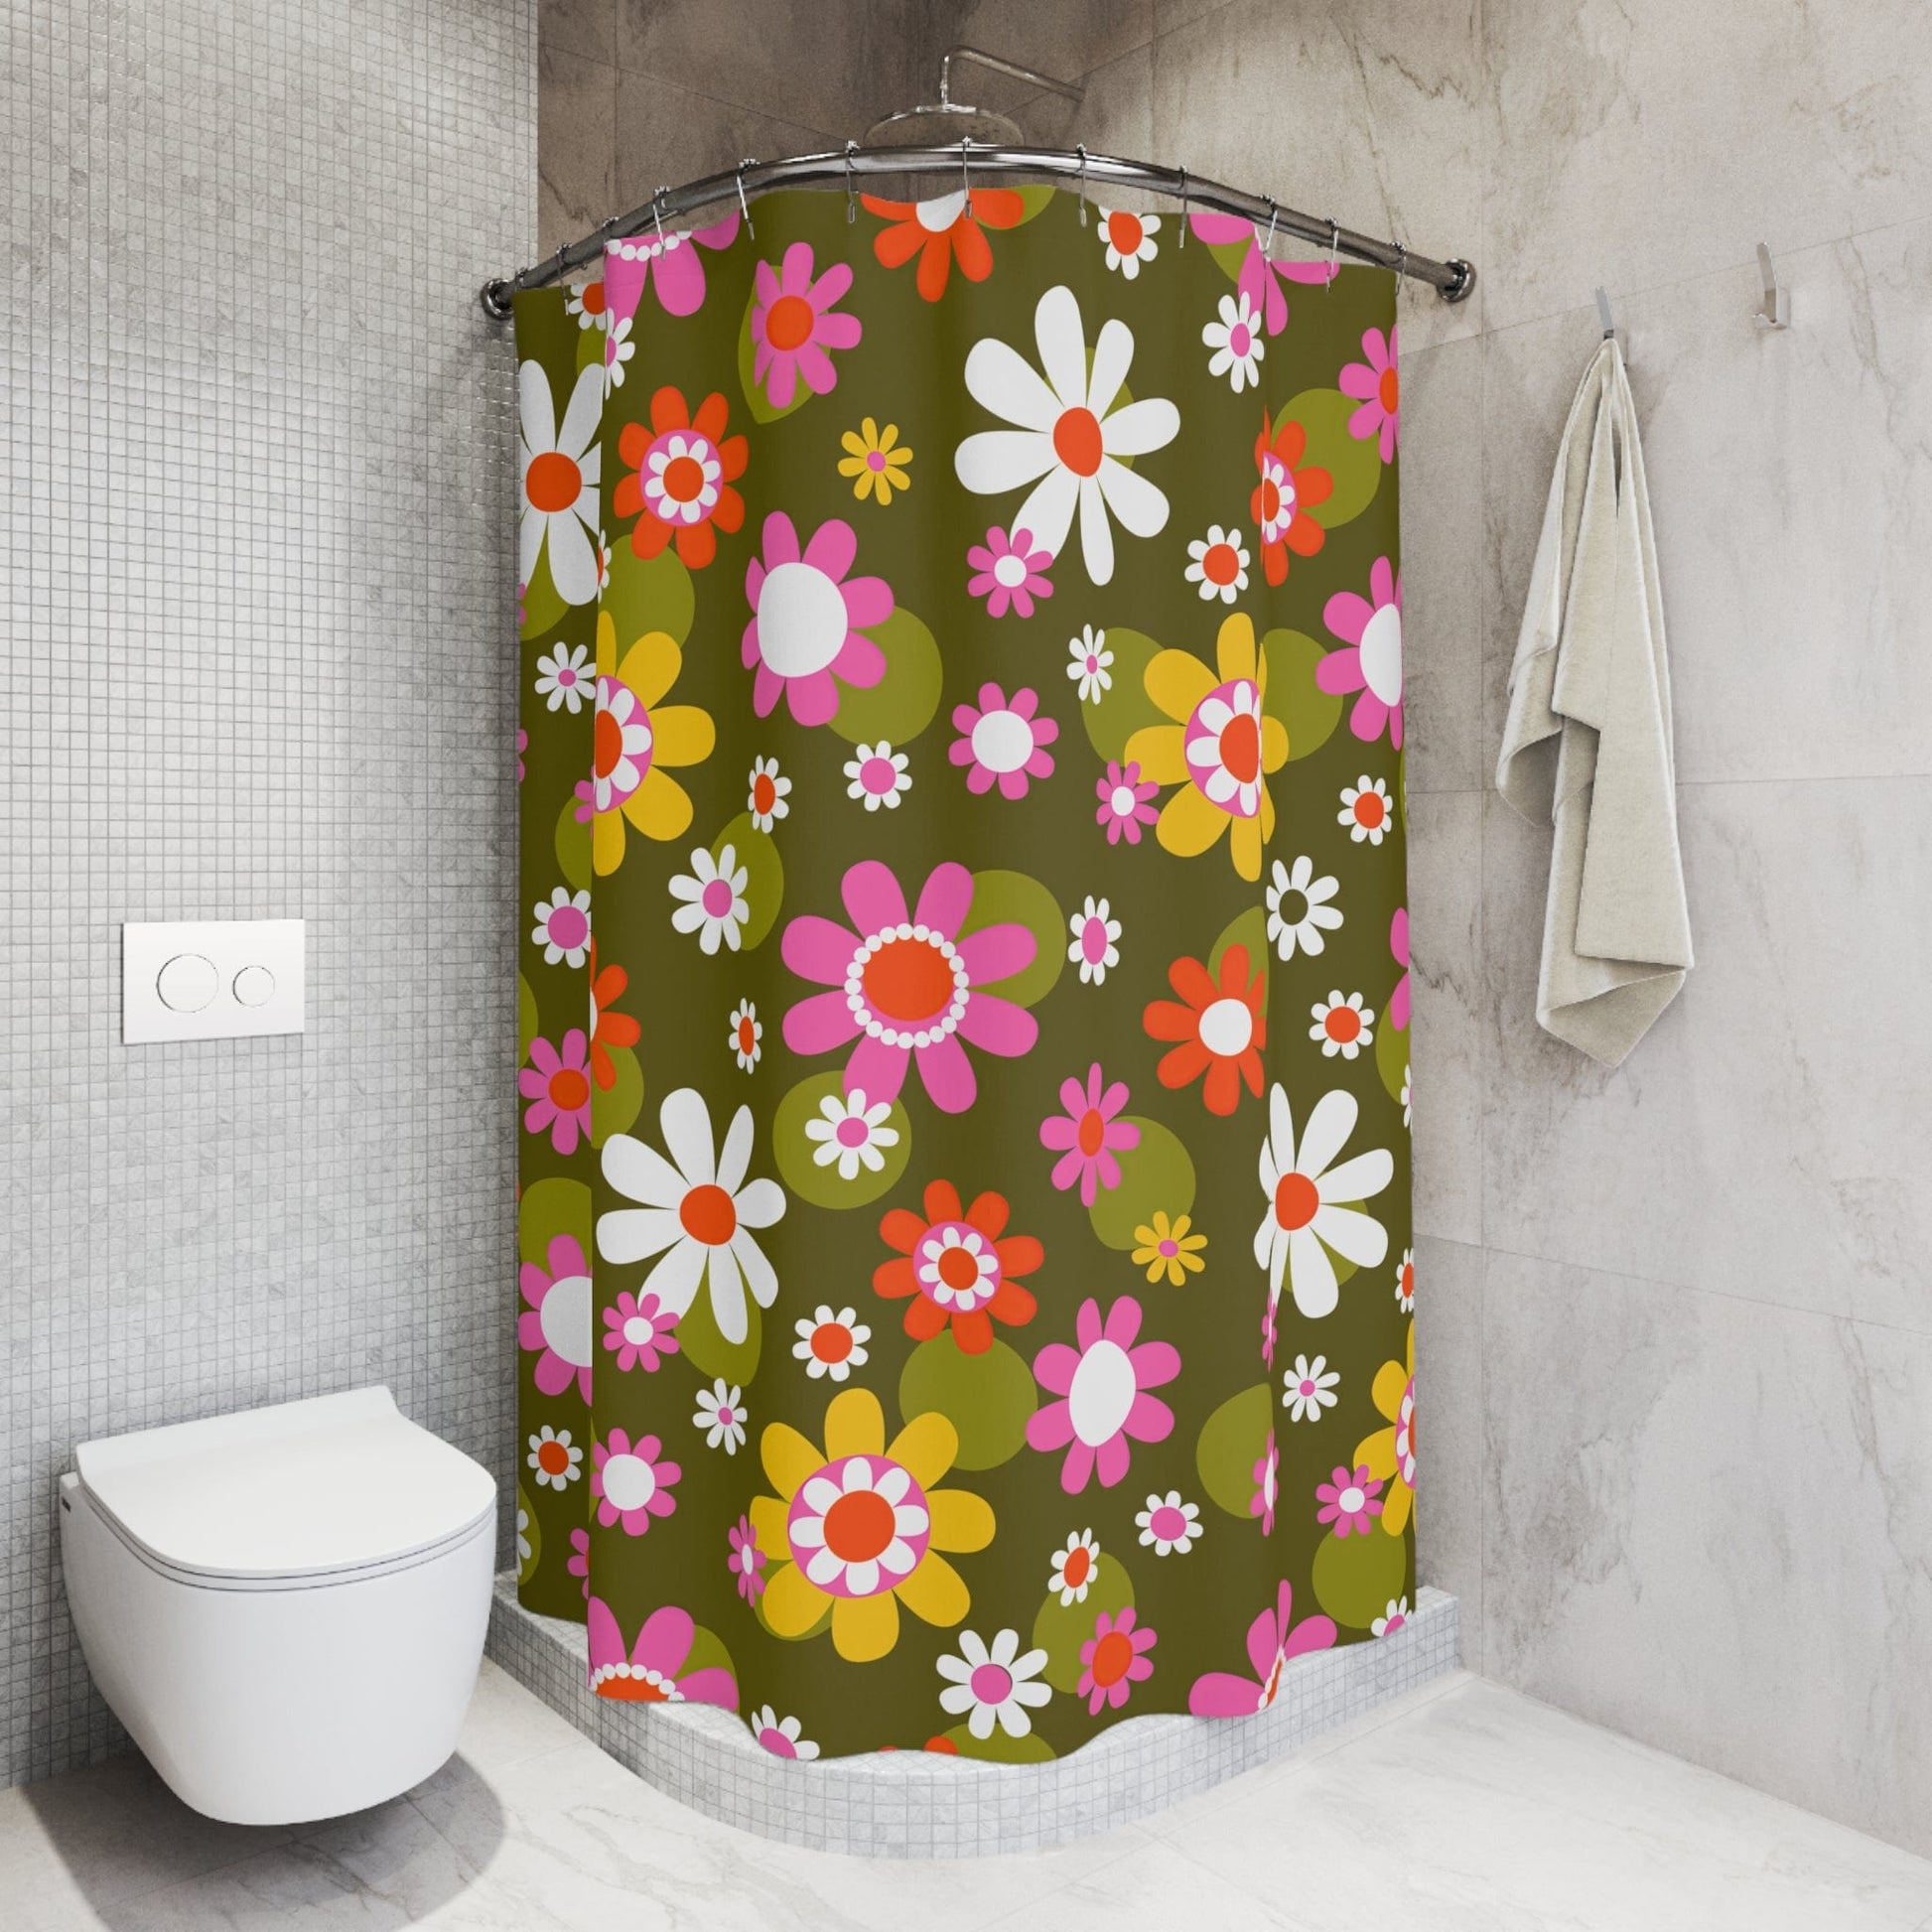 Printify Groovy Hippie Daisy Flower Power Shower Curtain Home Decor 71" × 74" 28036768828493988730